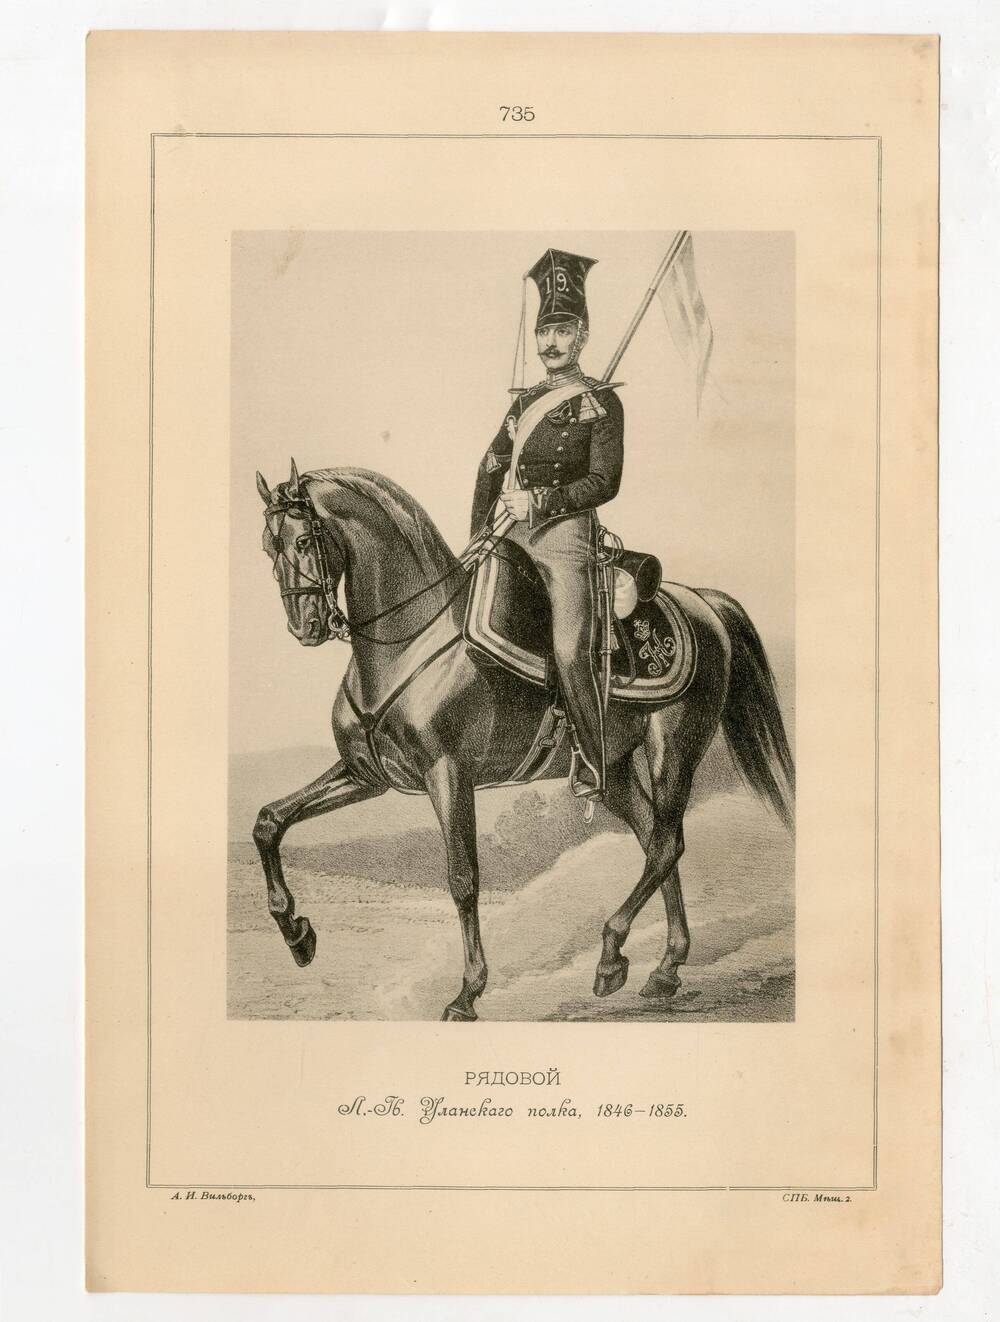 Литография Рядовой Лейб-Гвардии Уланского полка, 1846-1855